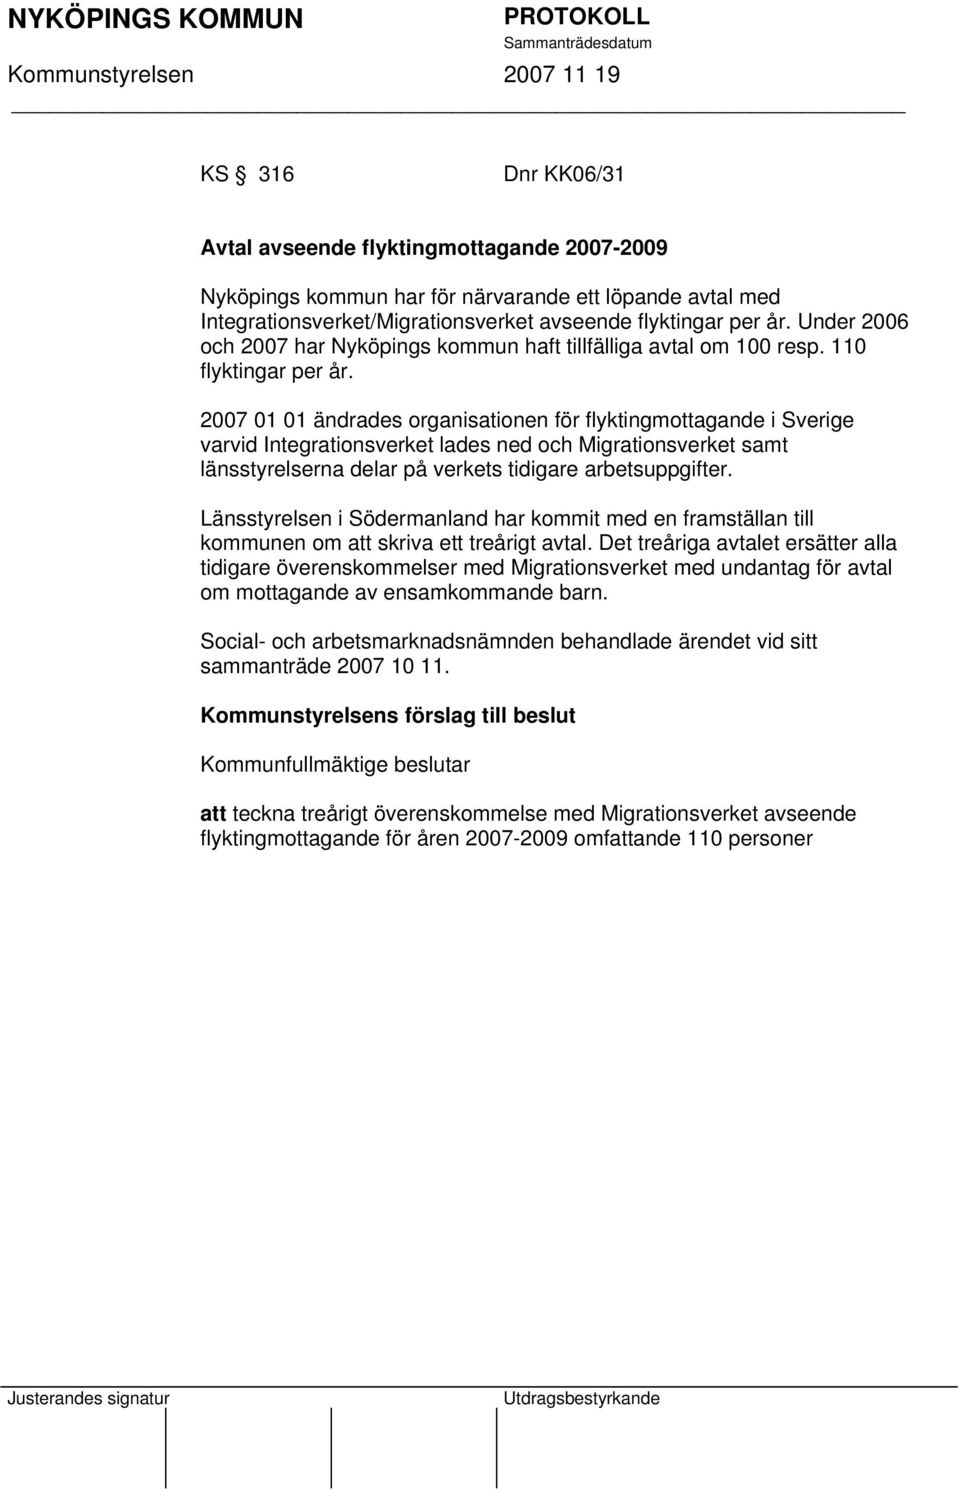 2007 01 01 ändrades organisationen för flyktingmottagande i Sverige varvid Integrationsverket lades ned och Migrationsverket samt länsstyrelserna delar på verkets tidigare arbetsuppgifter.